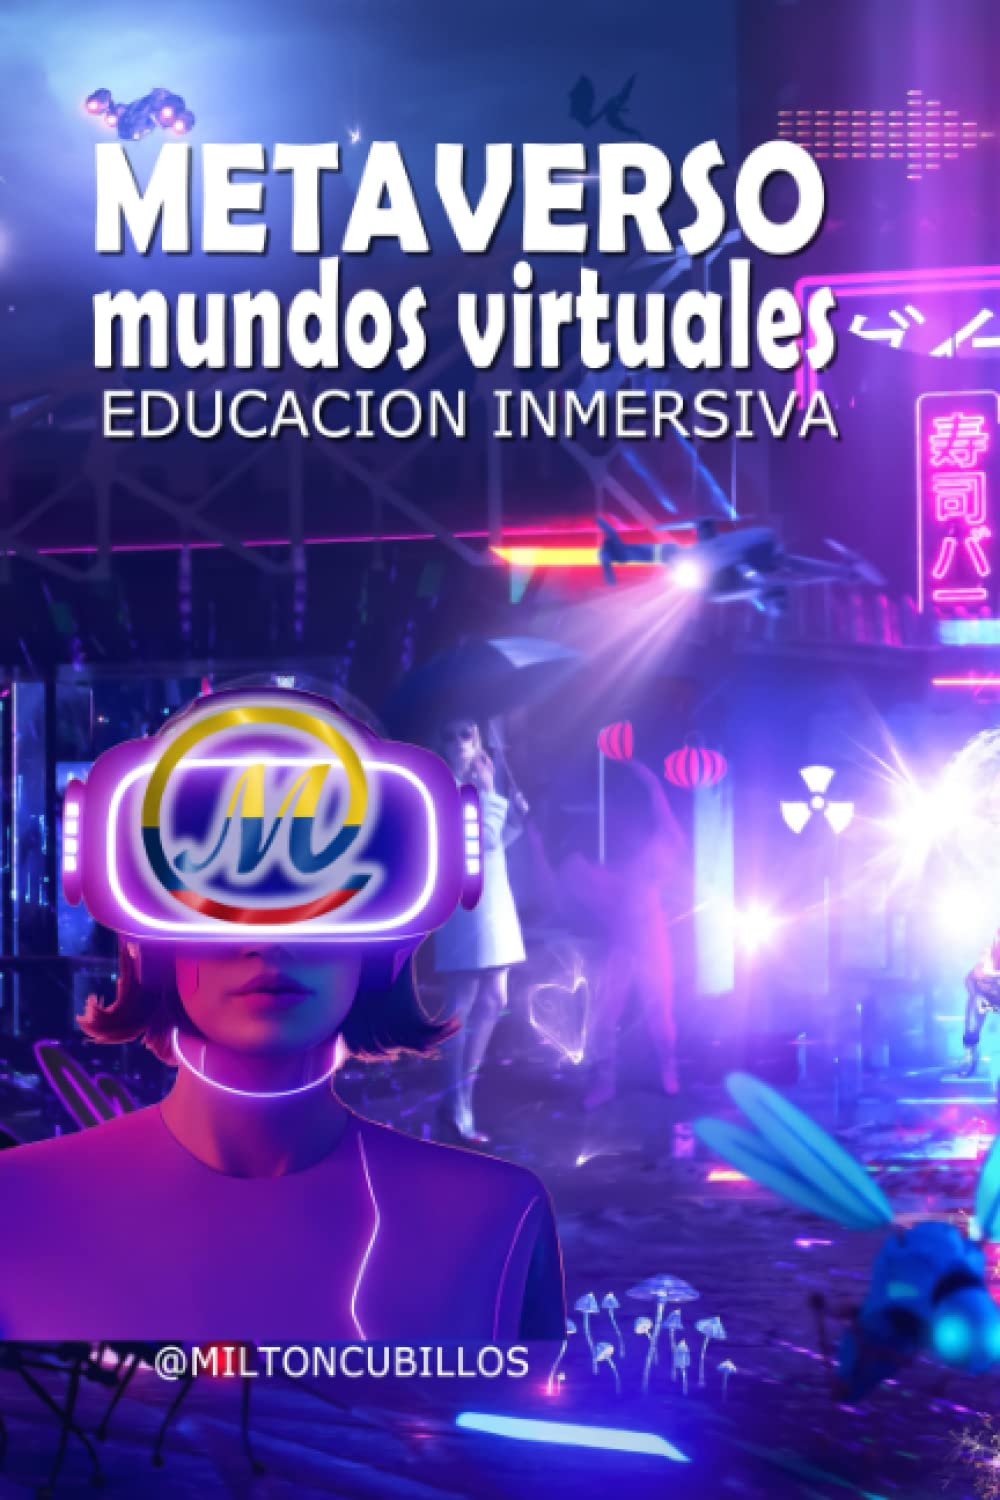 METAVERSO: EDUCACIÓN INMERSIVA: Educación Virtual, Ciber-Educación en mundos virtuales, Omniverso educativo, ASIN : B0BRPPVR4K, ASIN :B0BRLX59K4, ASIN :B0BRQY4J3Y, ASIN : B0BZGXPSZX, ISBN-13 : 979-8215014226